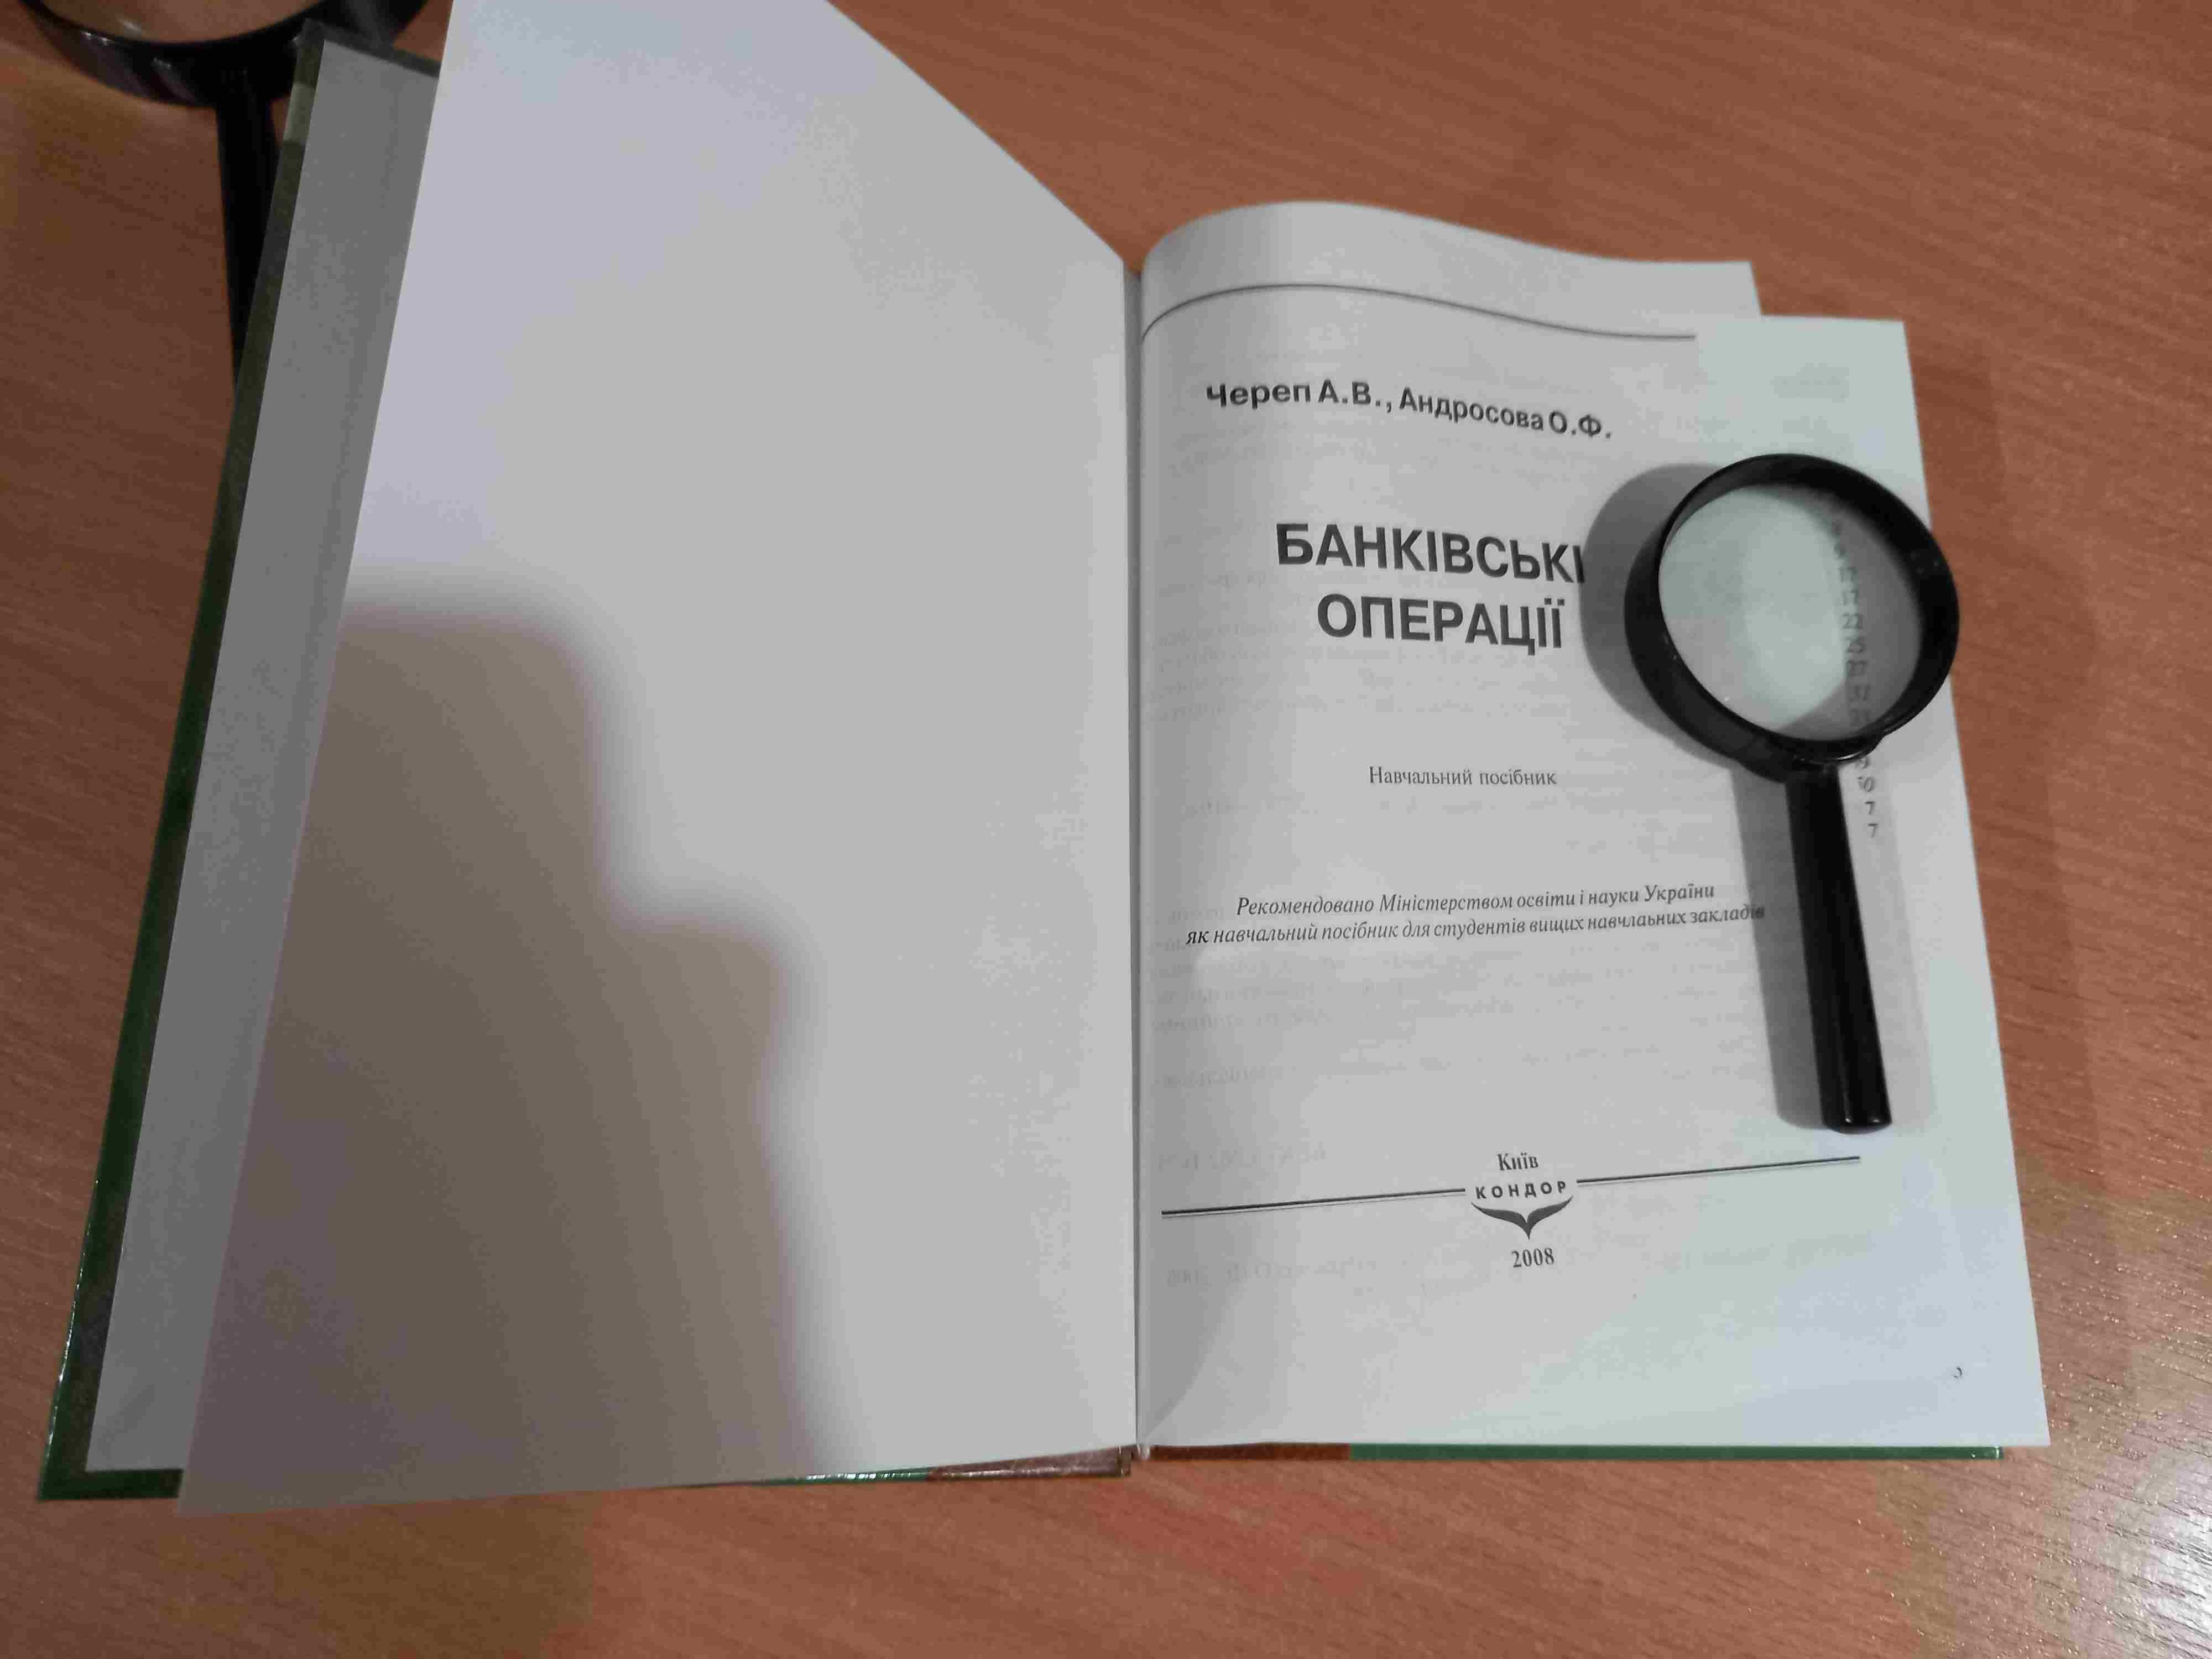 Банківські операції • Череп • Андросова • Київ • Кондор • 2008